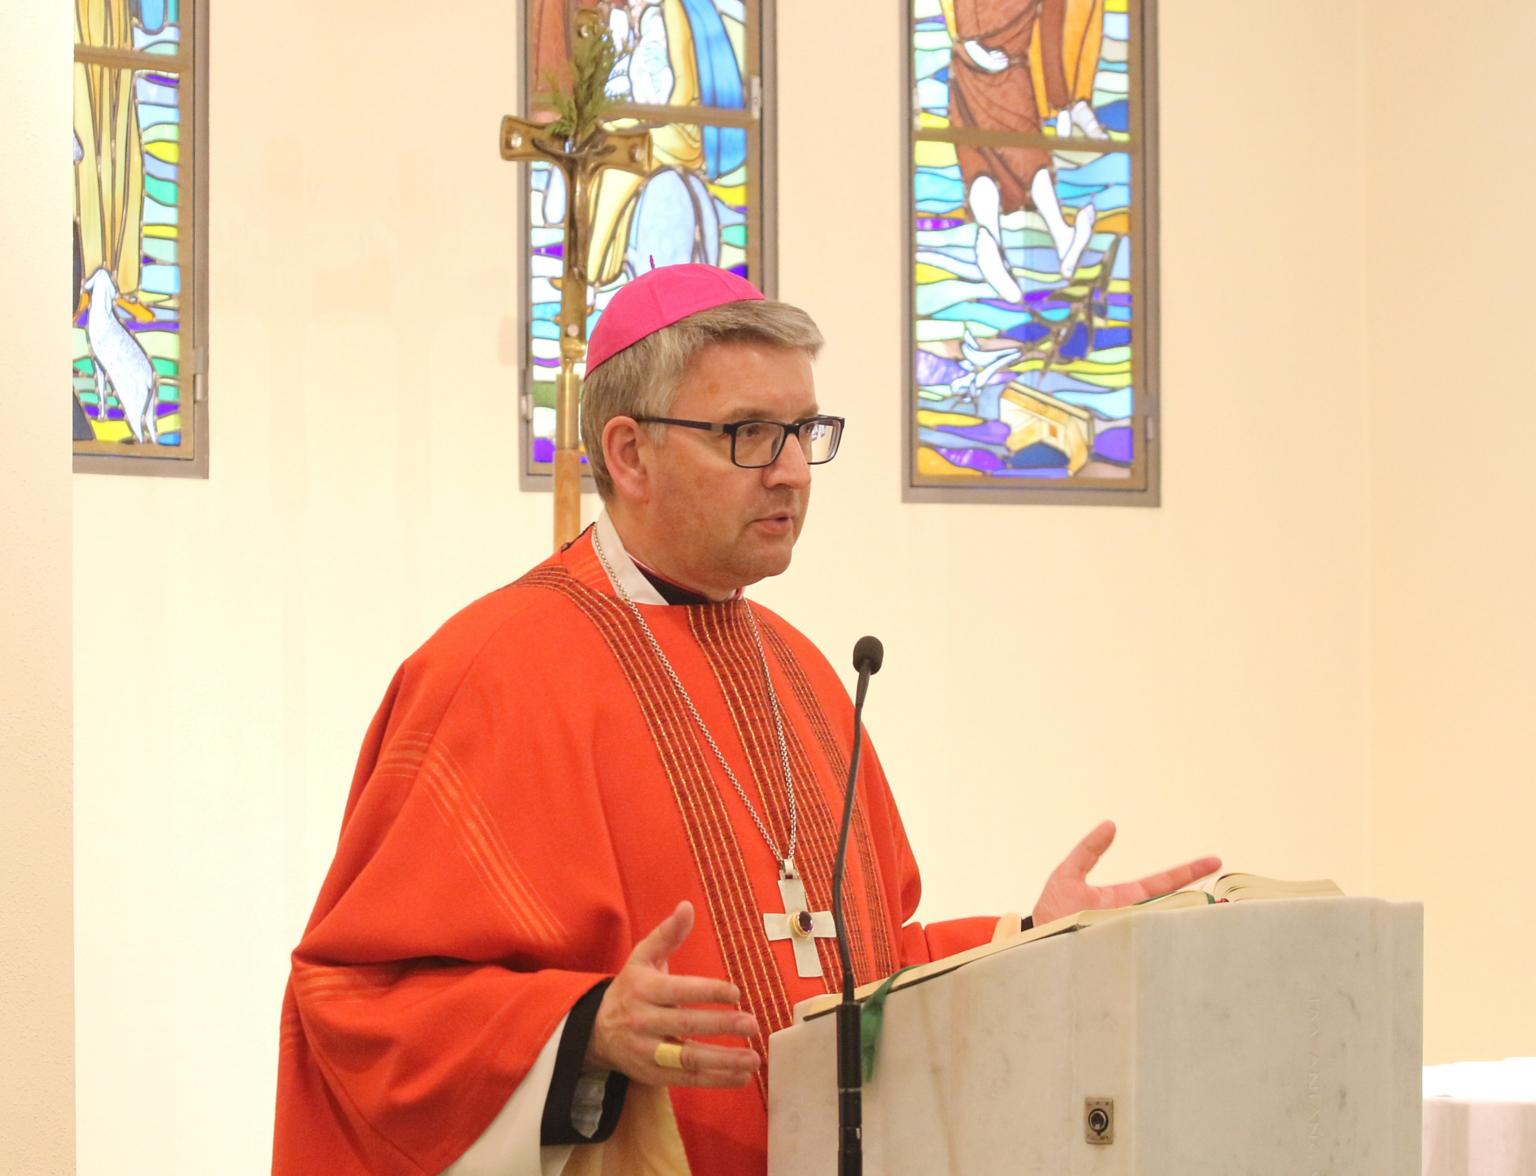 Darmstadt, 3. Mai 2019: Bischof Peter Kohlgraf würdigte die Arbeit des Katholischen Bildungszentrums NR 30 in Darmstadt. (c) Bistum Mainz / Blum